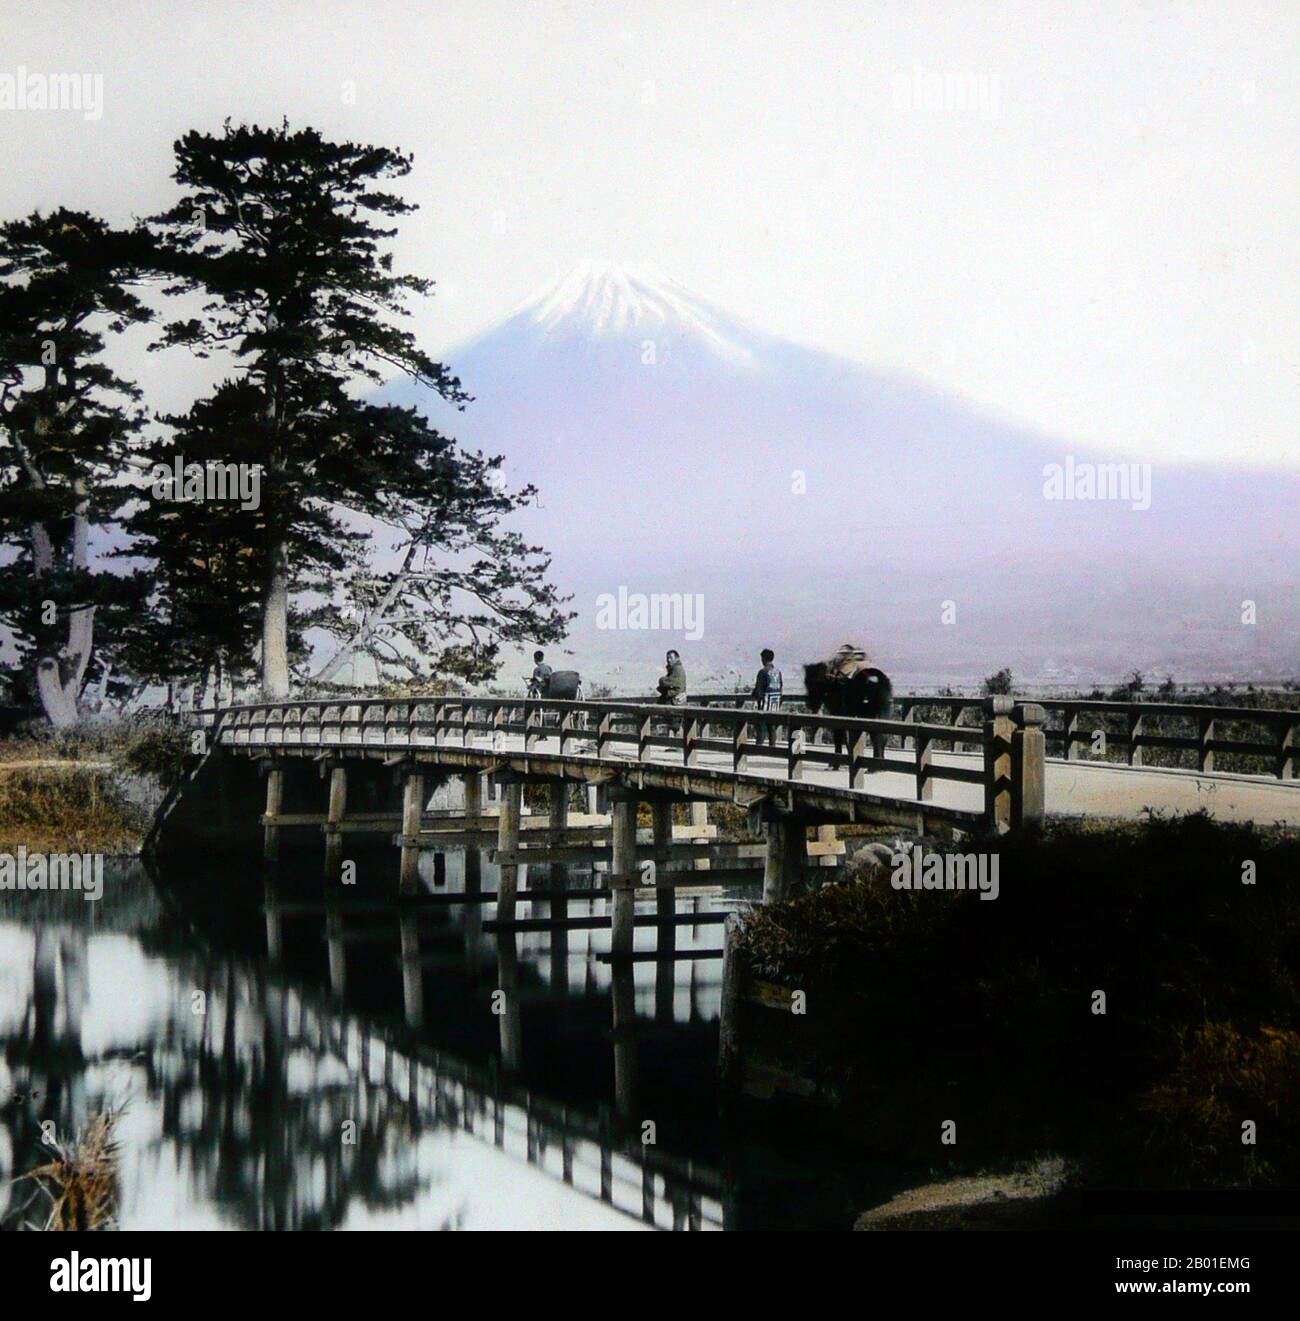 Japon : traversée d'un pont sous le Mont Fuji, Enami Nobukuni (1859-1929), vers 1910. T. Enami (Enami Nobukuni) était le nom commercial d'un célèbre photographe de l'époque Meiji. Le T. de son nom commercial est censé avoir représenté Toshi, bien qu'il ne l'ait jamais écrit sur aucun document personnel ou d'affaires. Né à Edo (aujourd'hui Tokyo) pendant l'ère Bakumatsu, Enami a d'abord été étudiant, puis assistant du célèbre photographe et collectionniste, Ogawa Kazumasa. Enami a déménagé à Yokohama, et a ouvert un studio sur Benten-dōri (rue Benten) en 1892. Banque D'Images